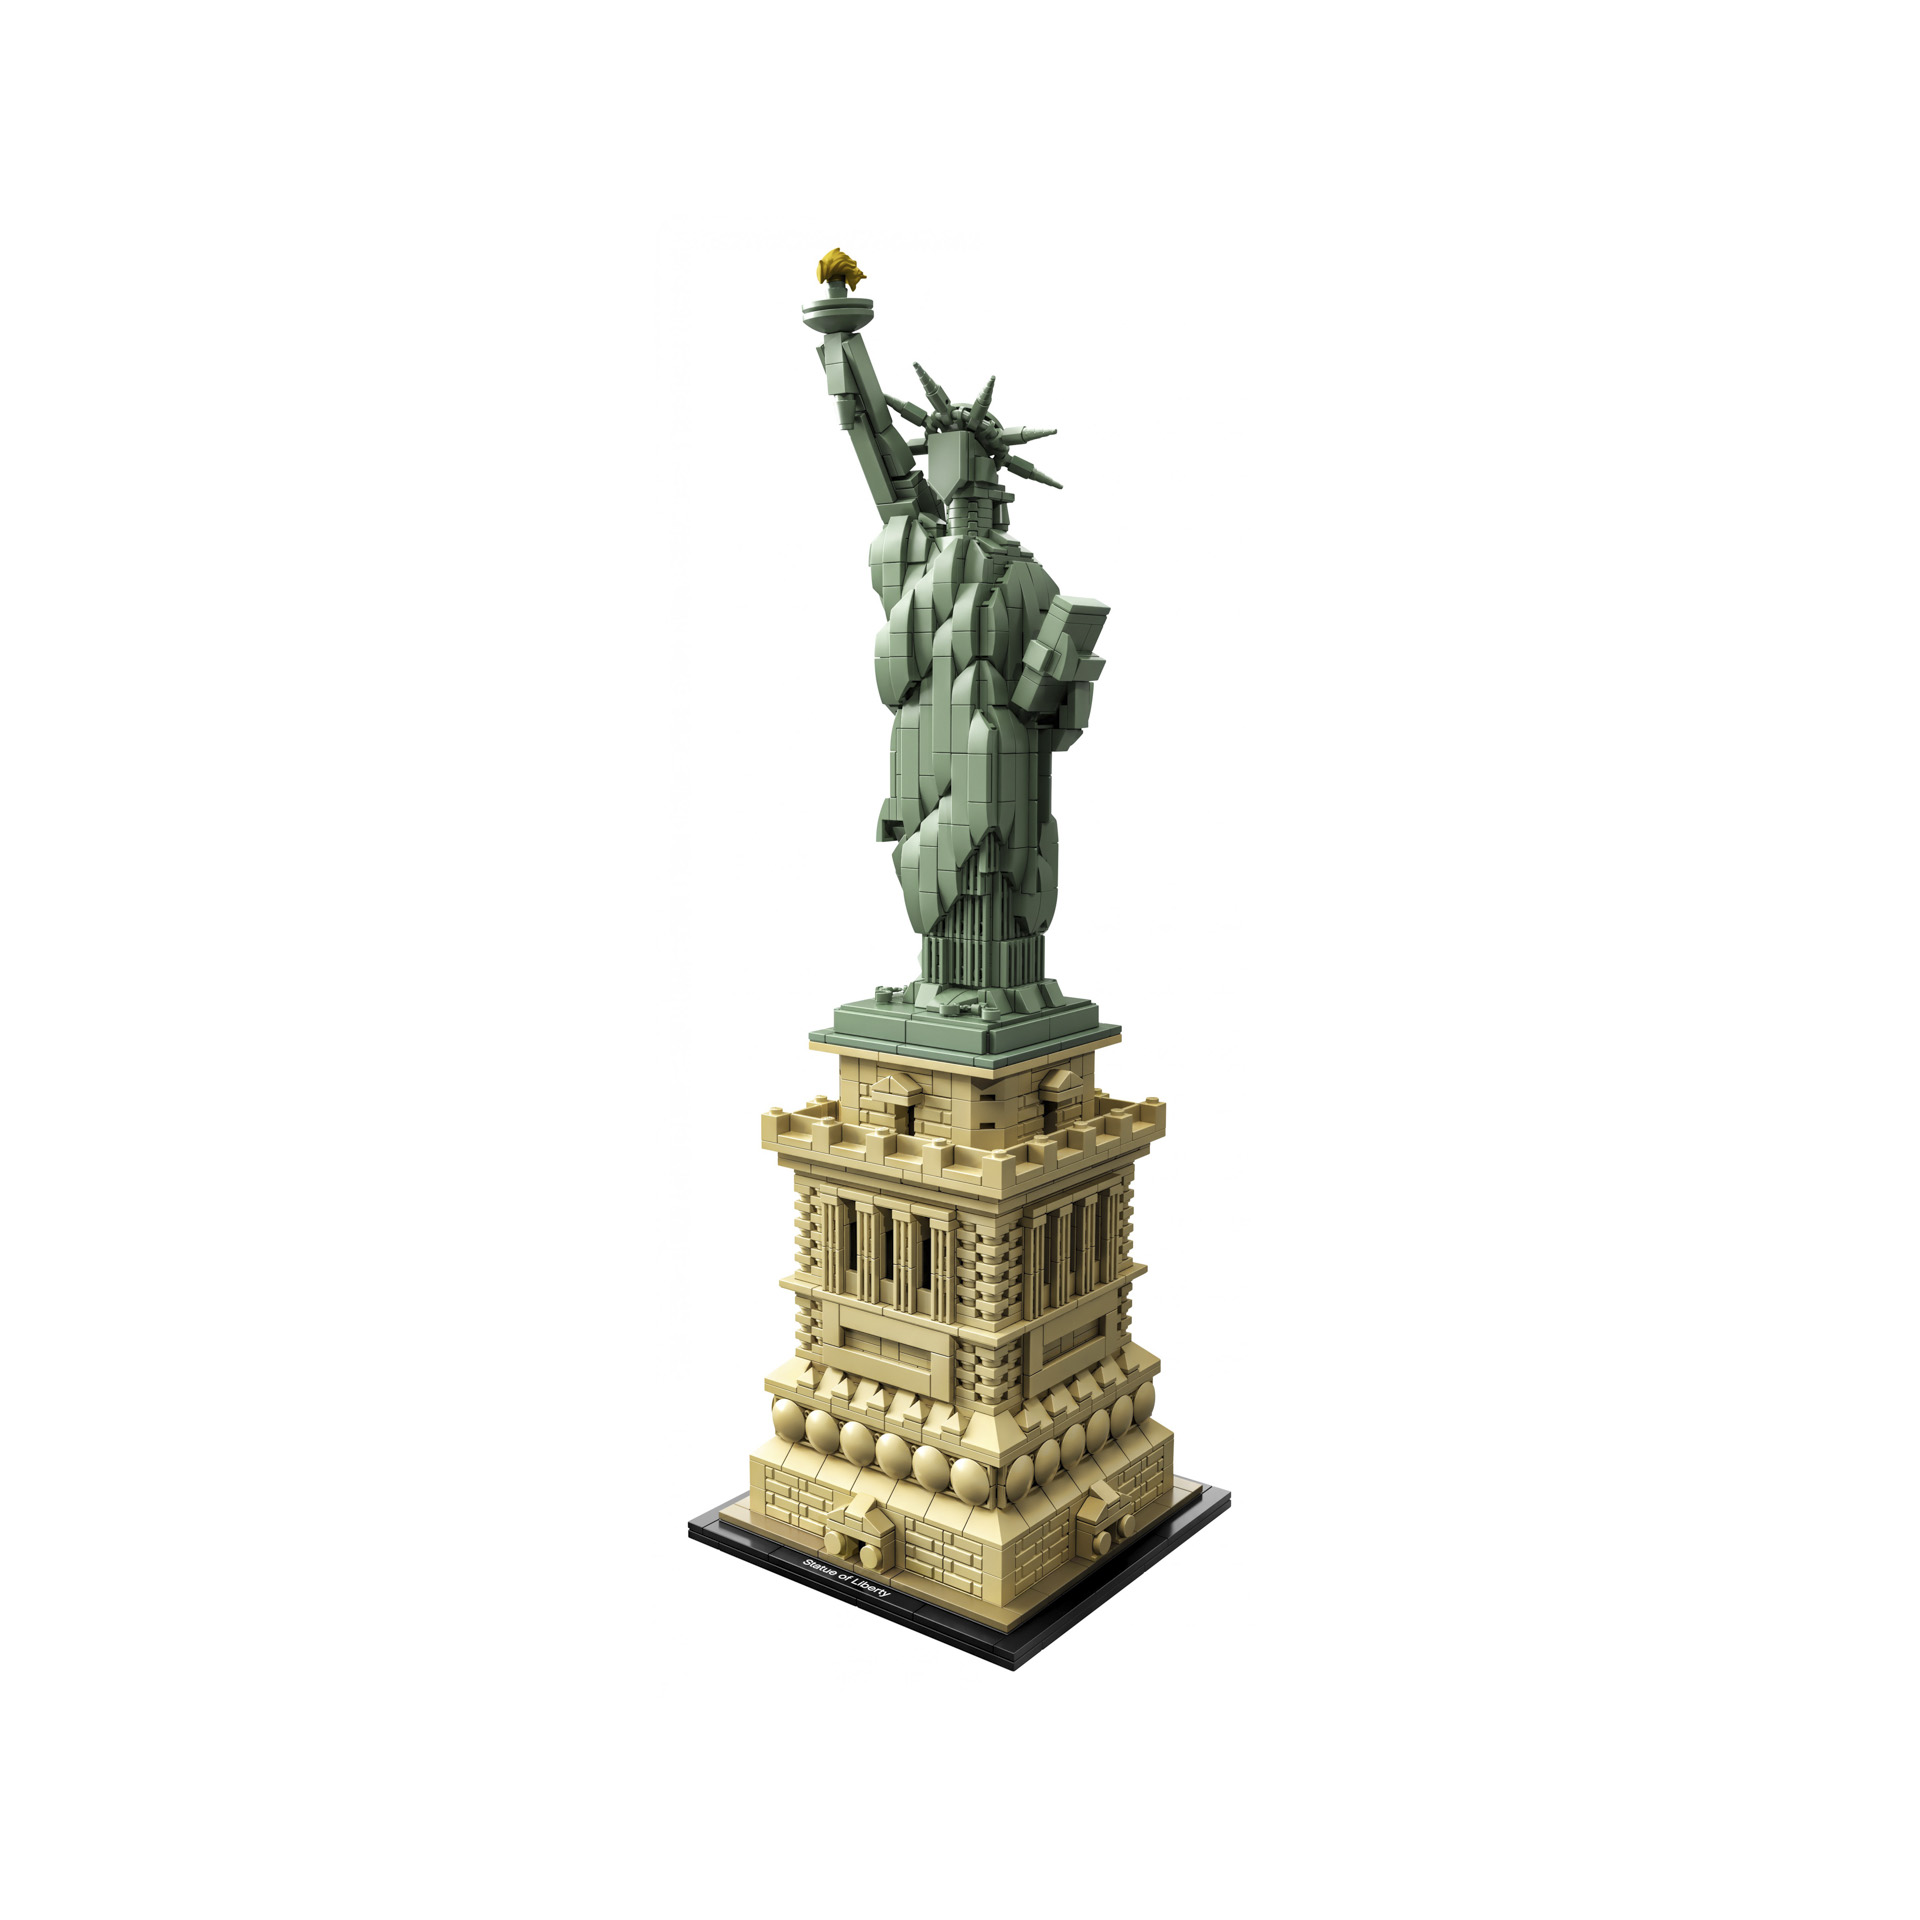 LEGO Architecture Statua della Libertà, Set di Costruzioni e Idea Regalo Collezi 21042, , large